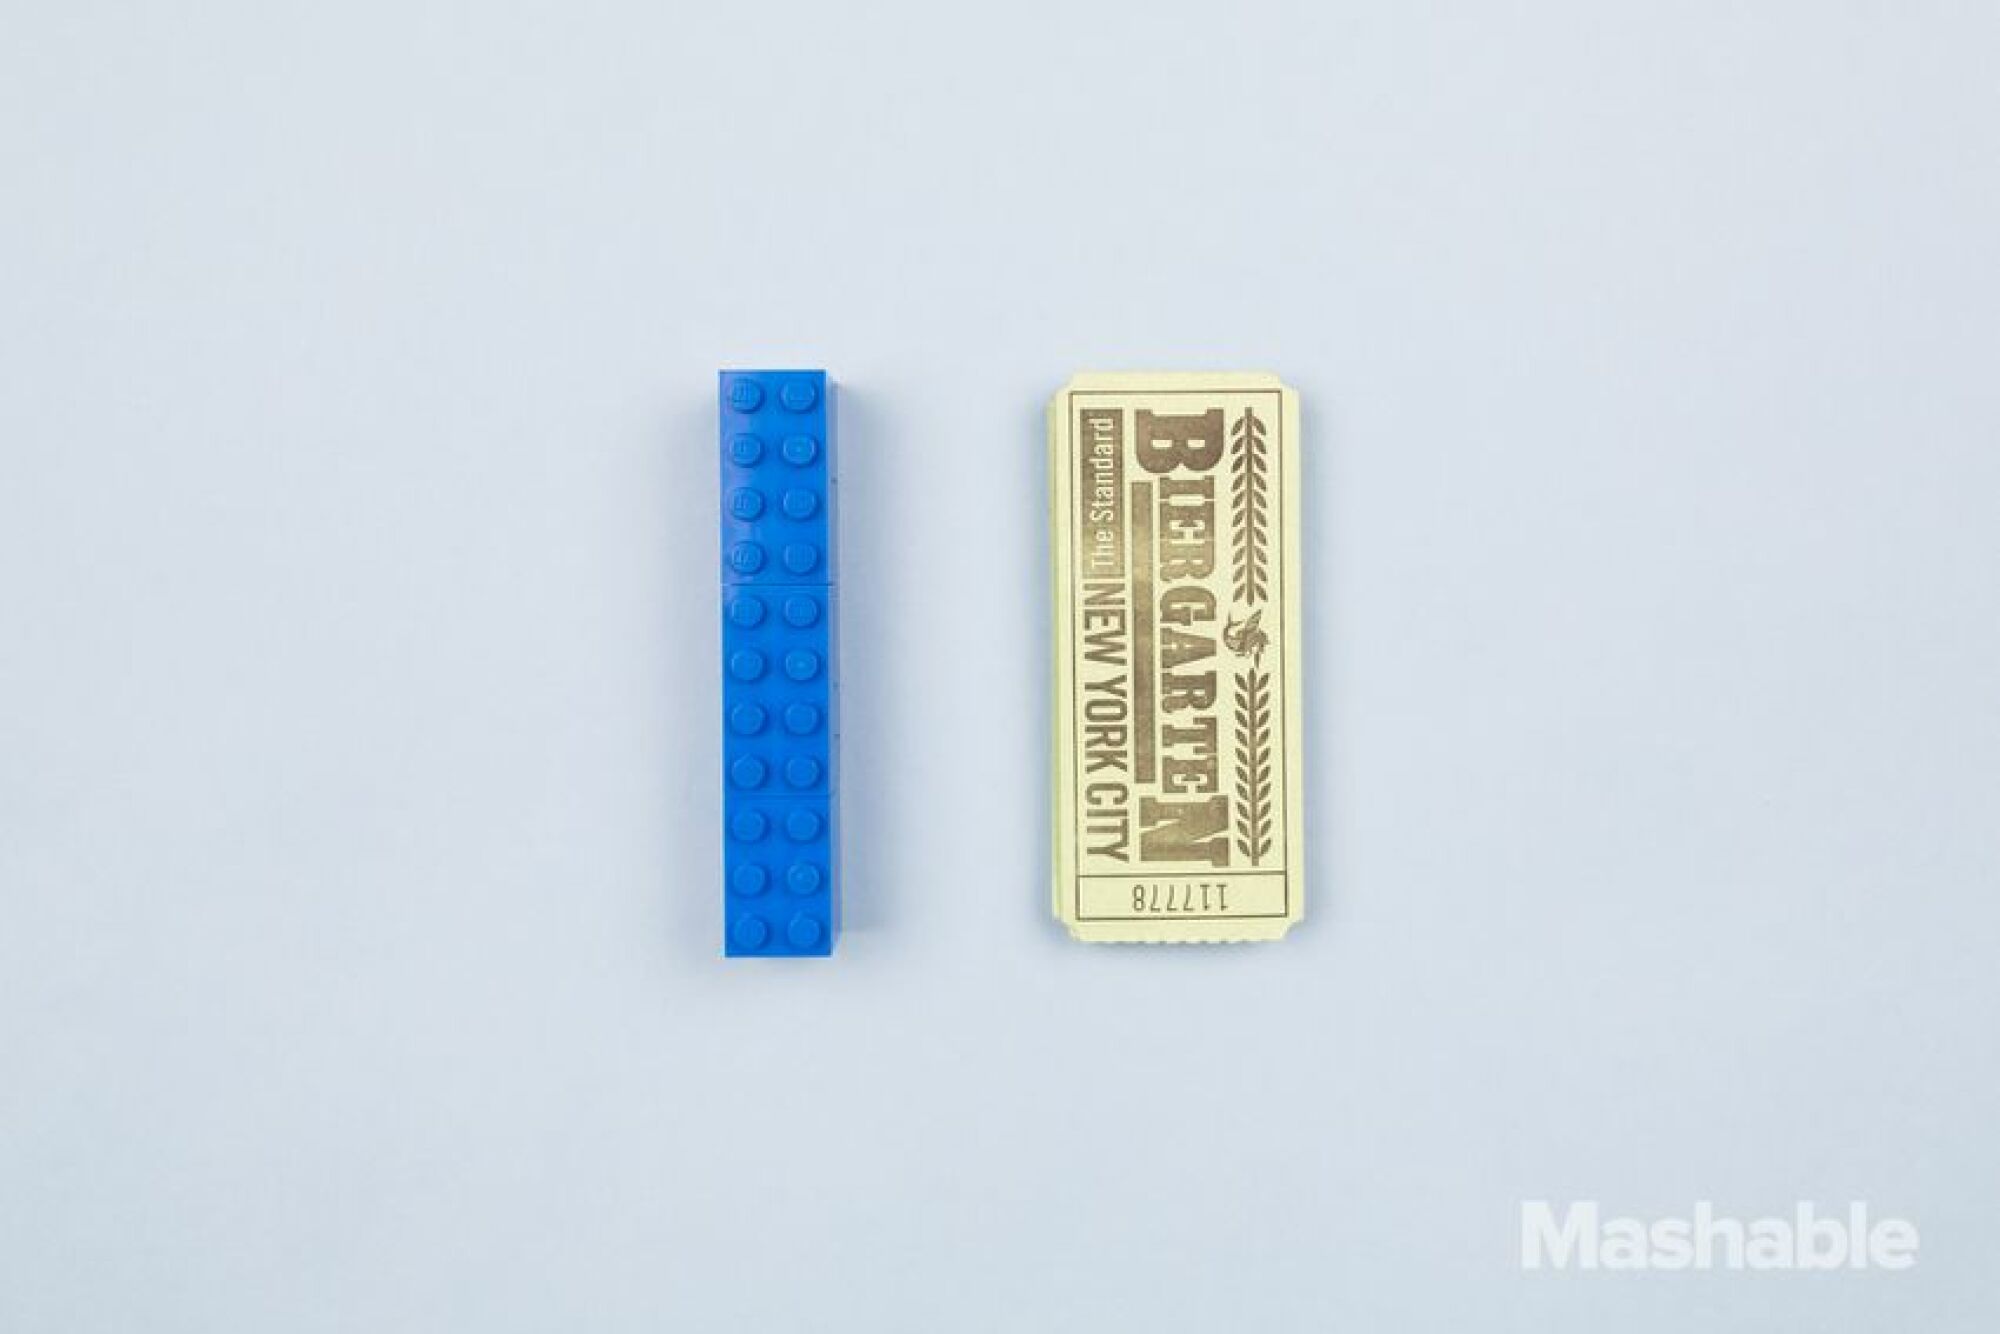 Le Lego bleu à côté d'un ticket.